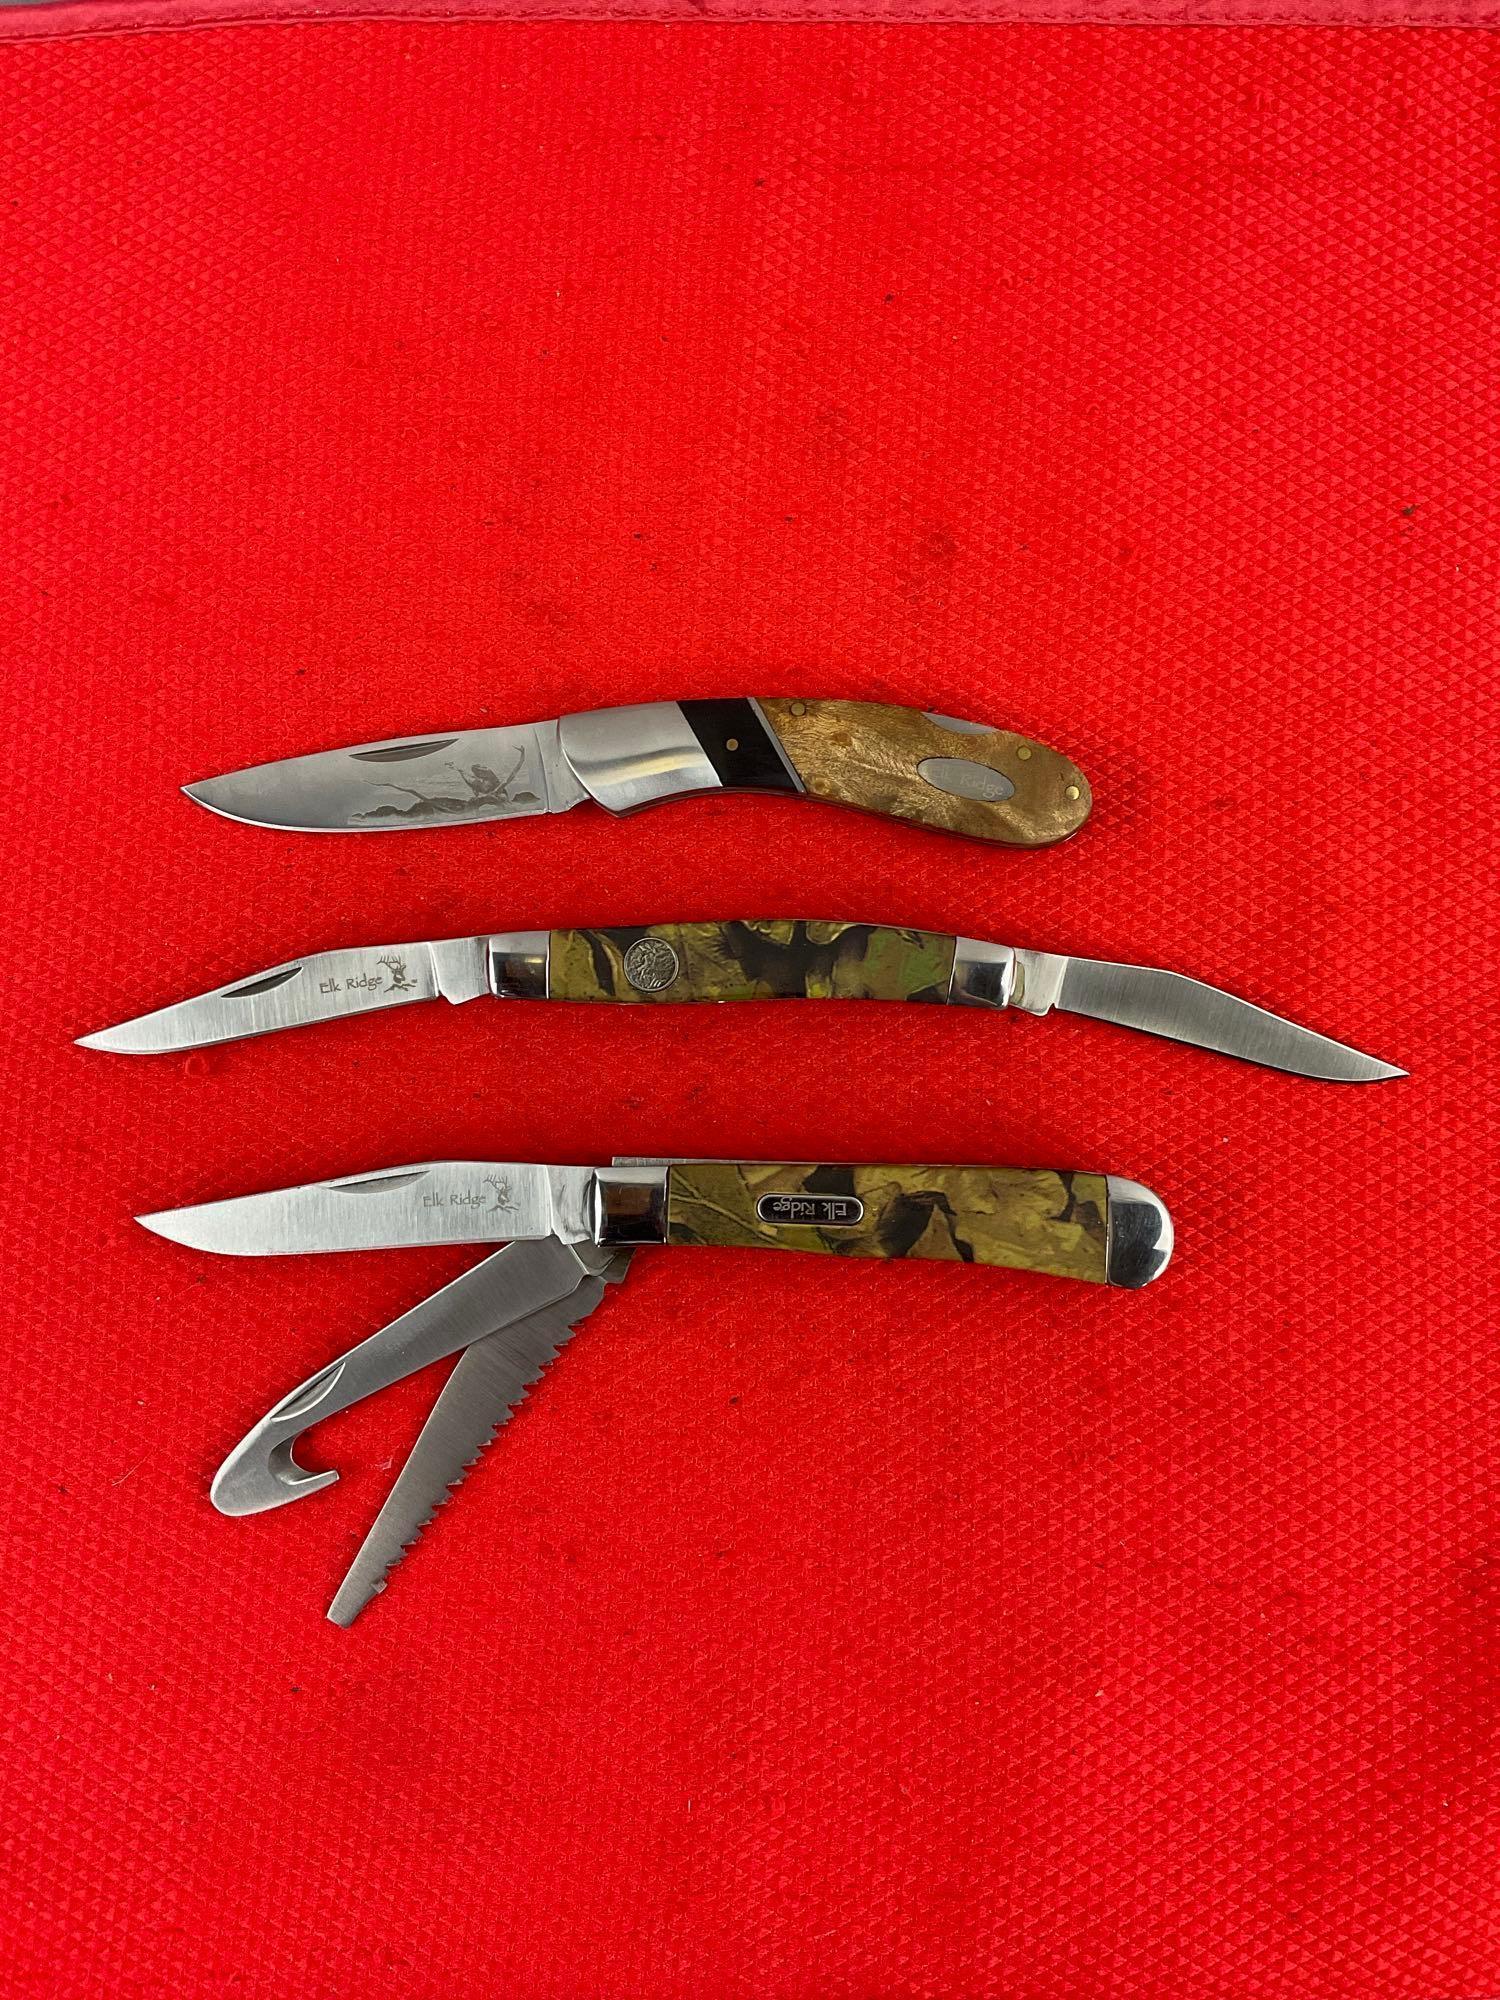 3 pcs Elk Ridge 440 Stainless Steel Folding Blade Pocket Knives Models ER-072E, ER-089C. NIB. See